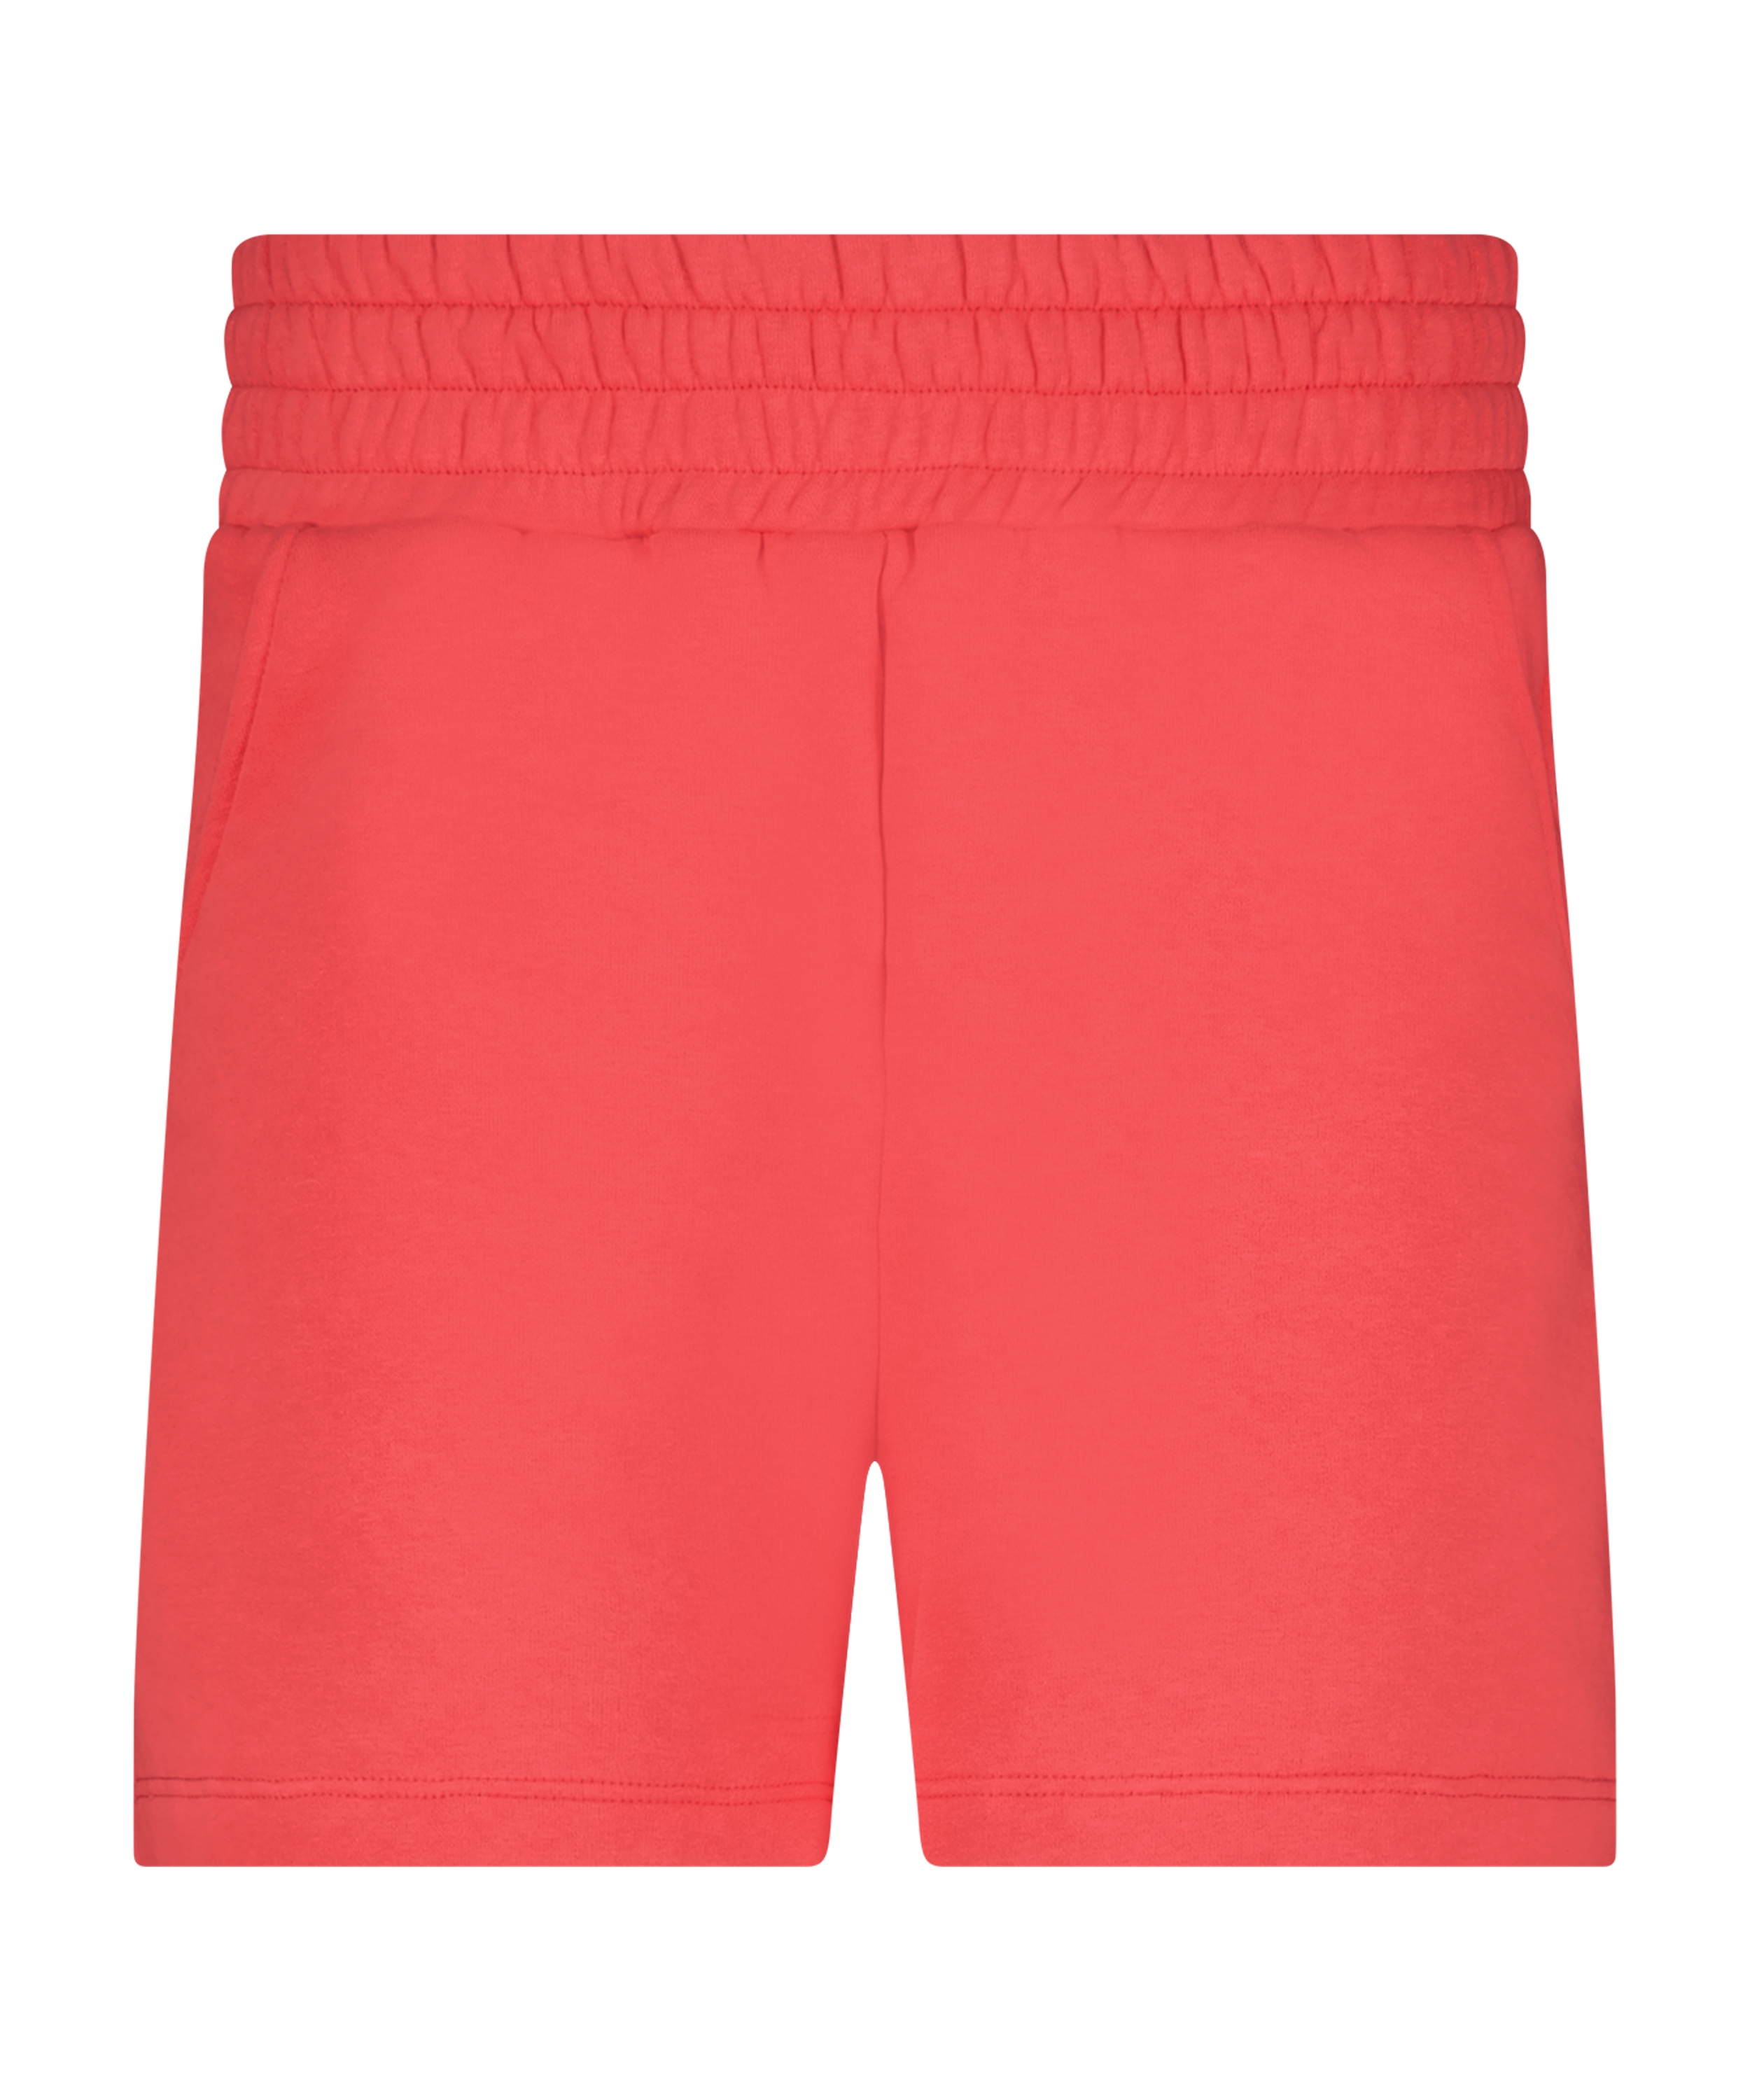 Shorts Sweat Lounge, pink, main